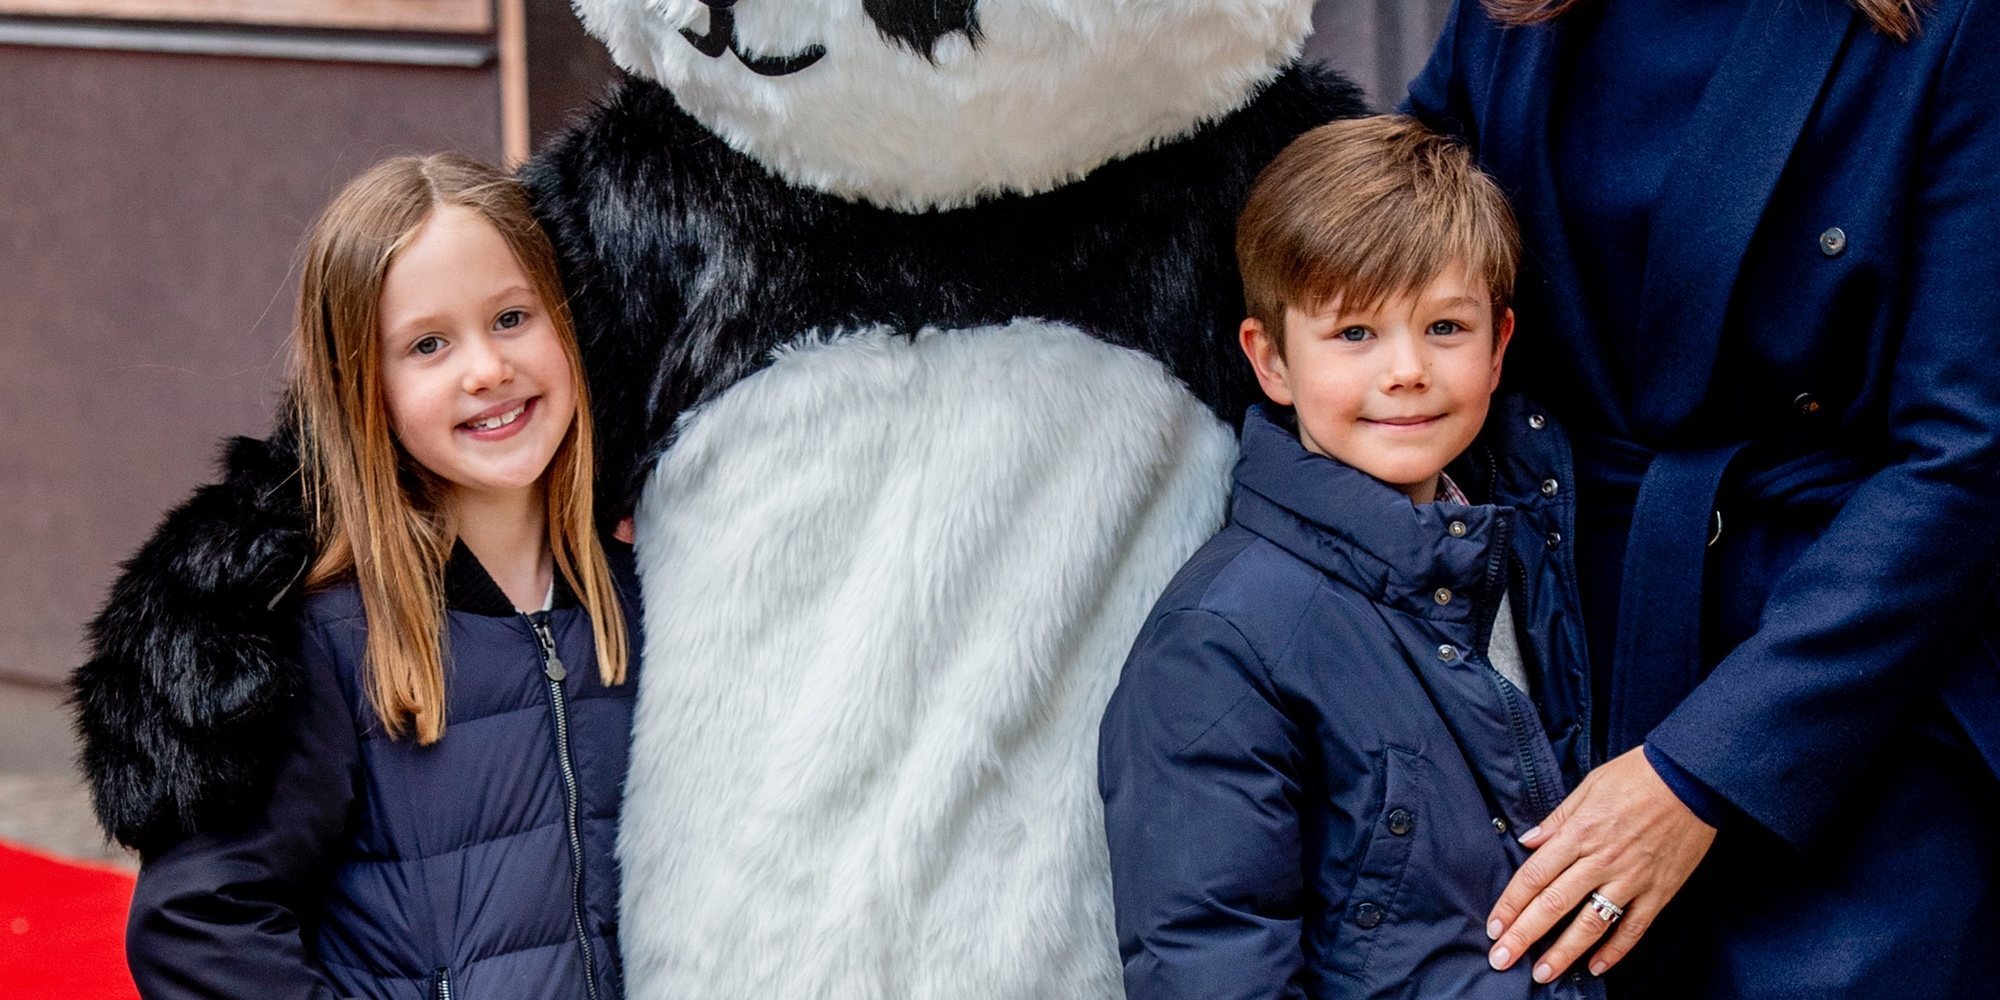 Vicente y Josefina de Dinamarca, emocionados al conocer la nueva casa de los pandas del Zoo de Copenhague